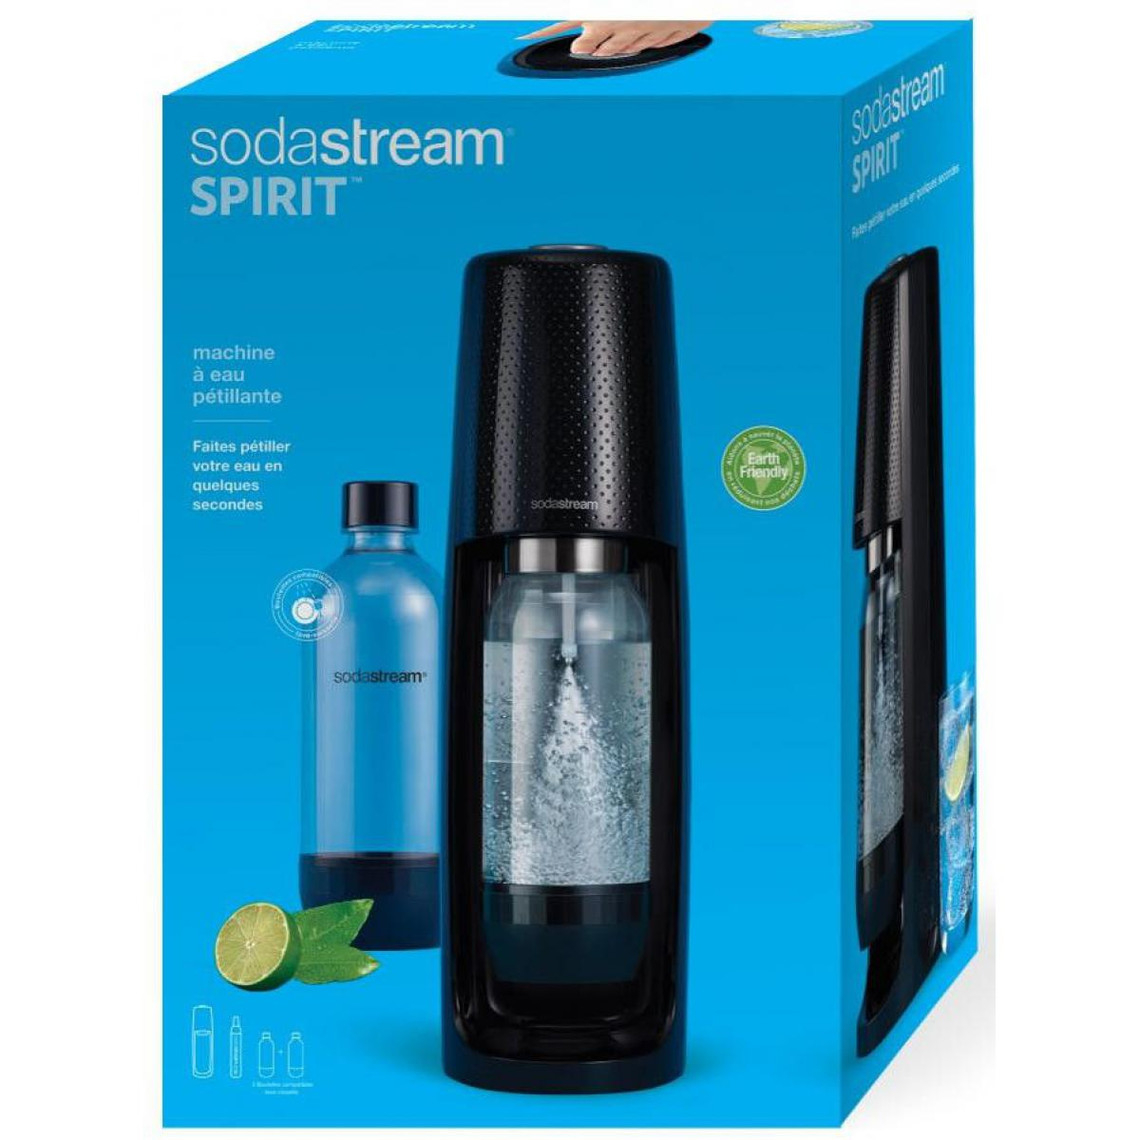 Sodastream sodastream - spiritnlv